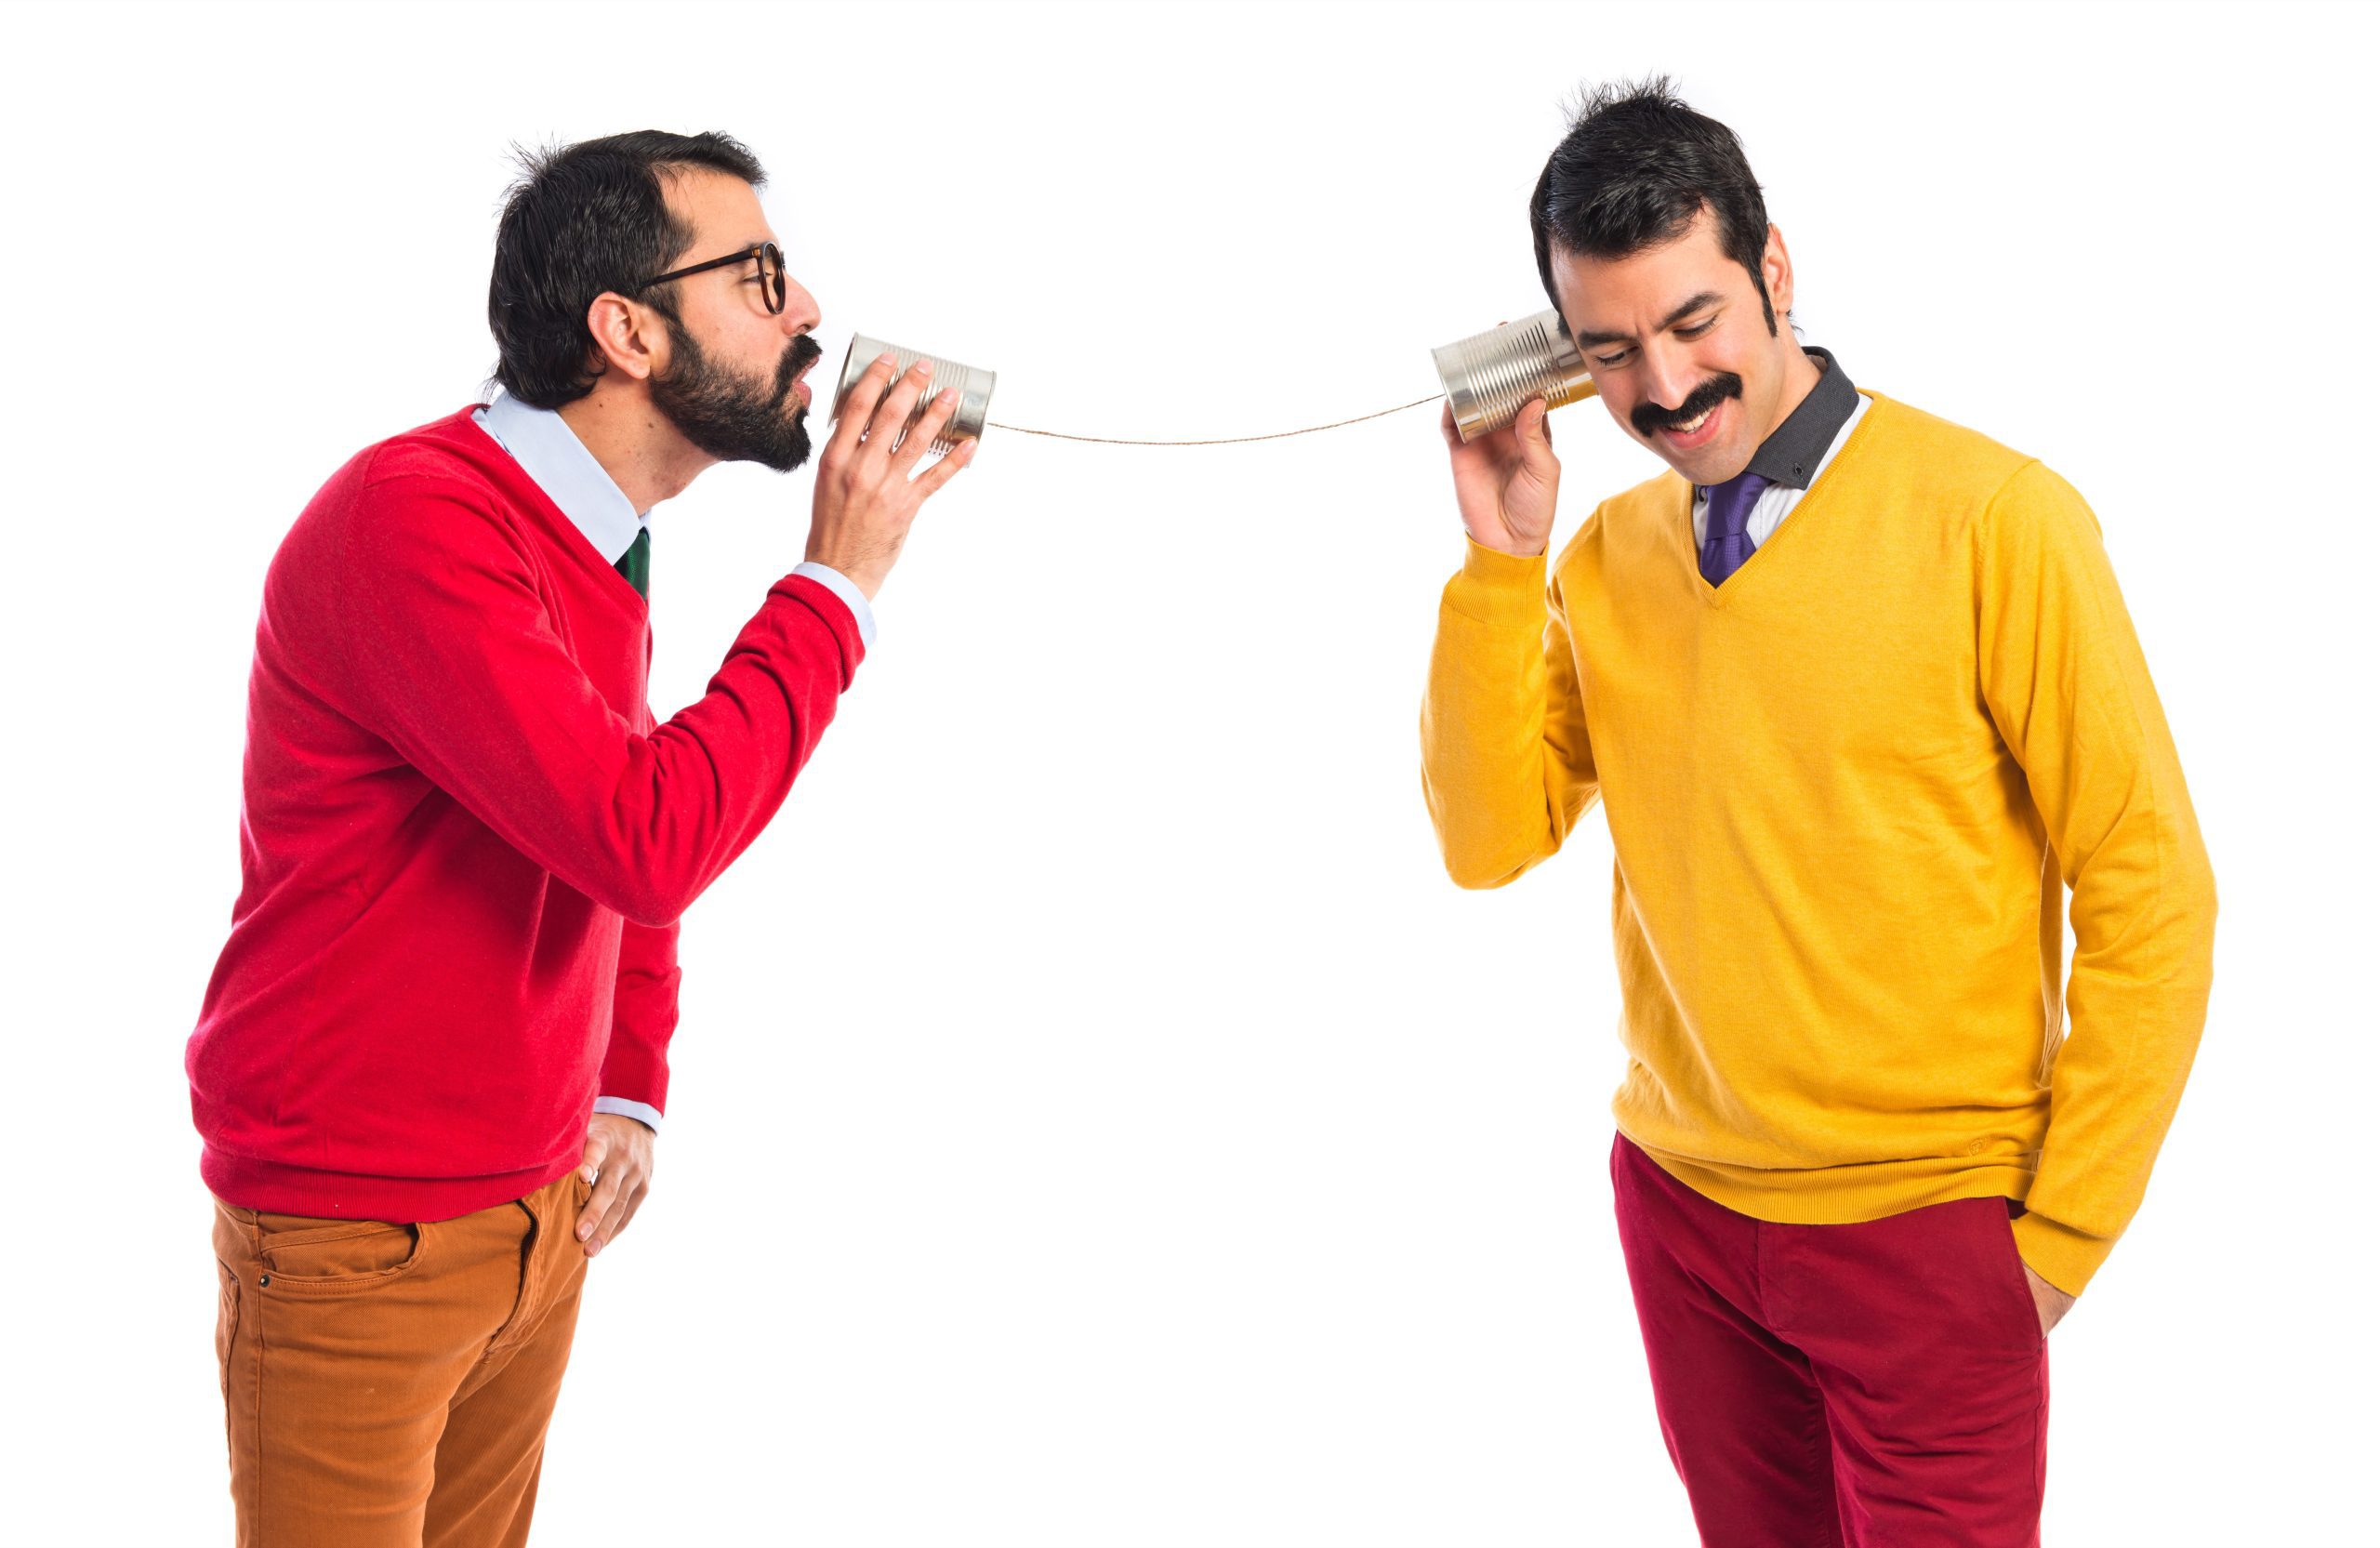 Featured image for “Aprimorar a comunicação é primordial para empresários e executivos”